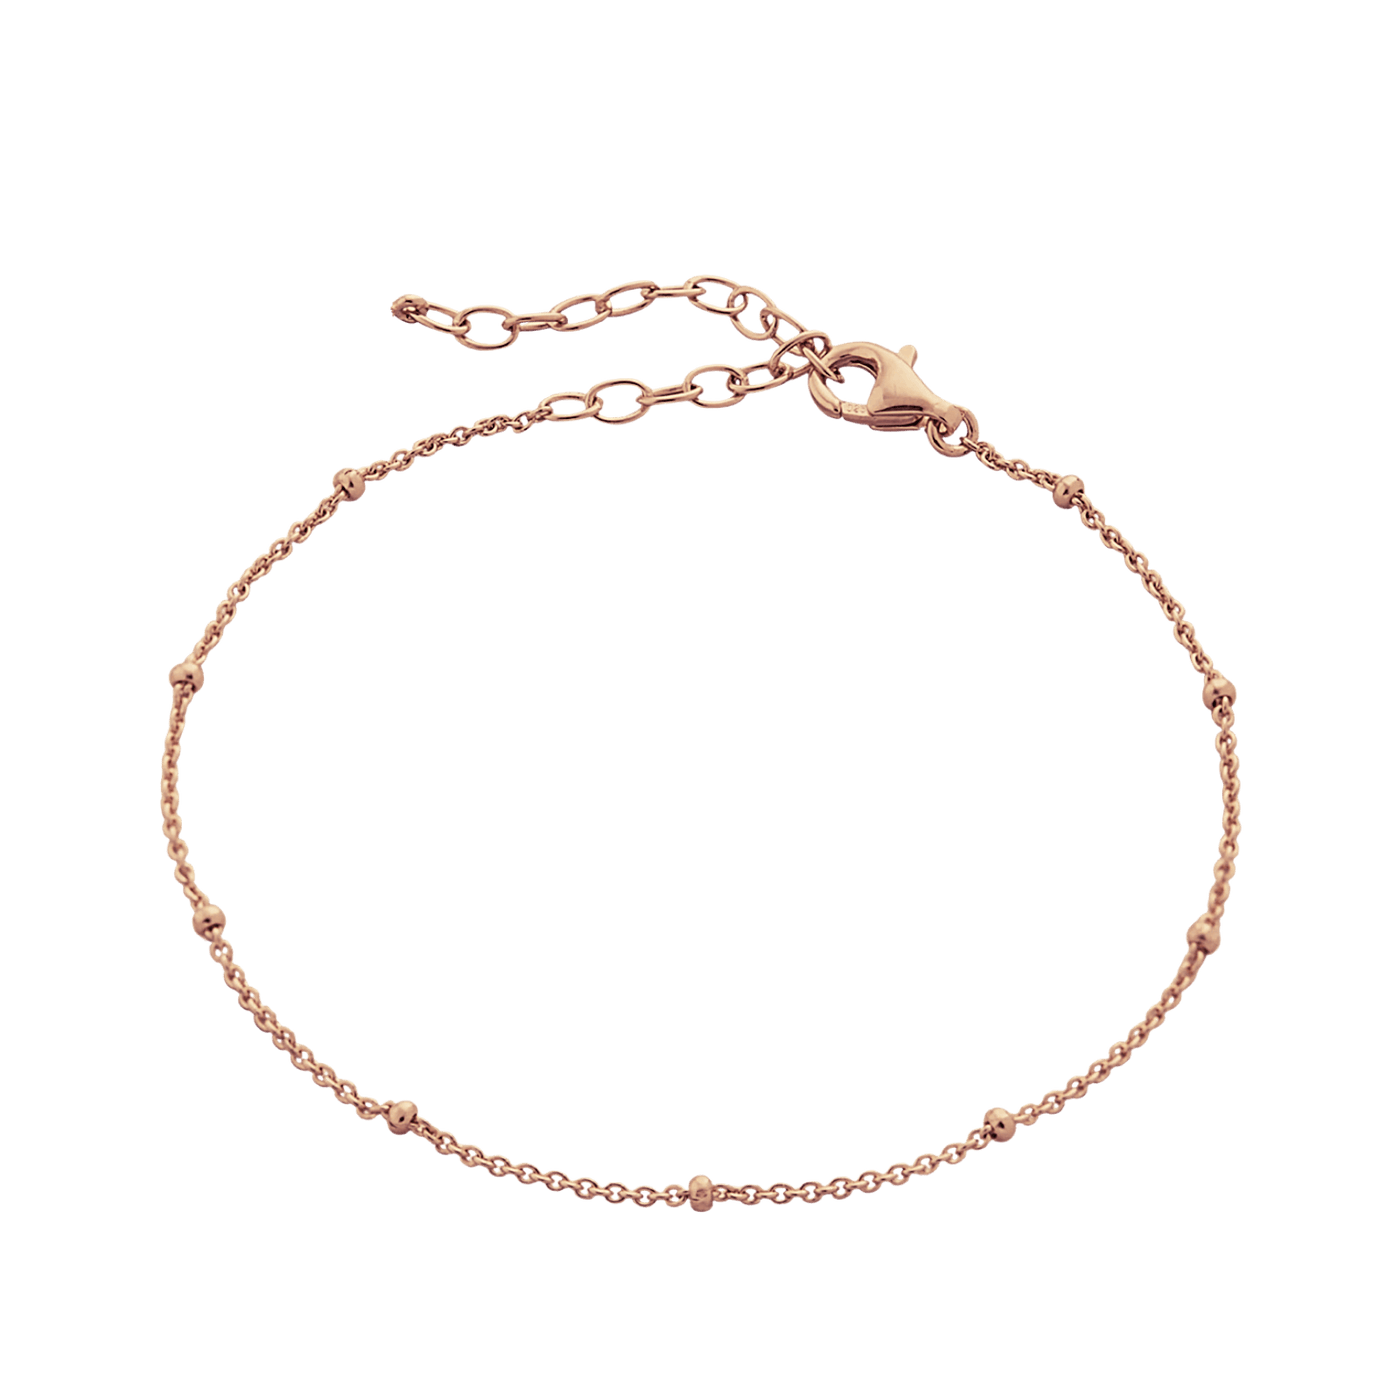 Bead Curb Chain Adjustable Satellite Bracelet